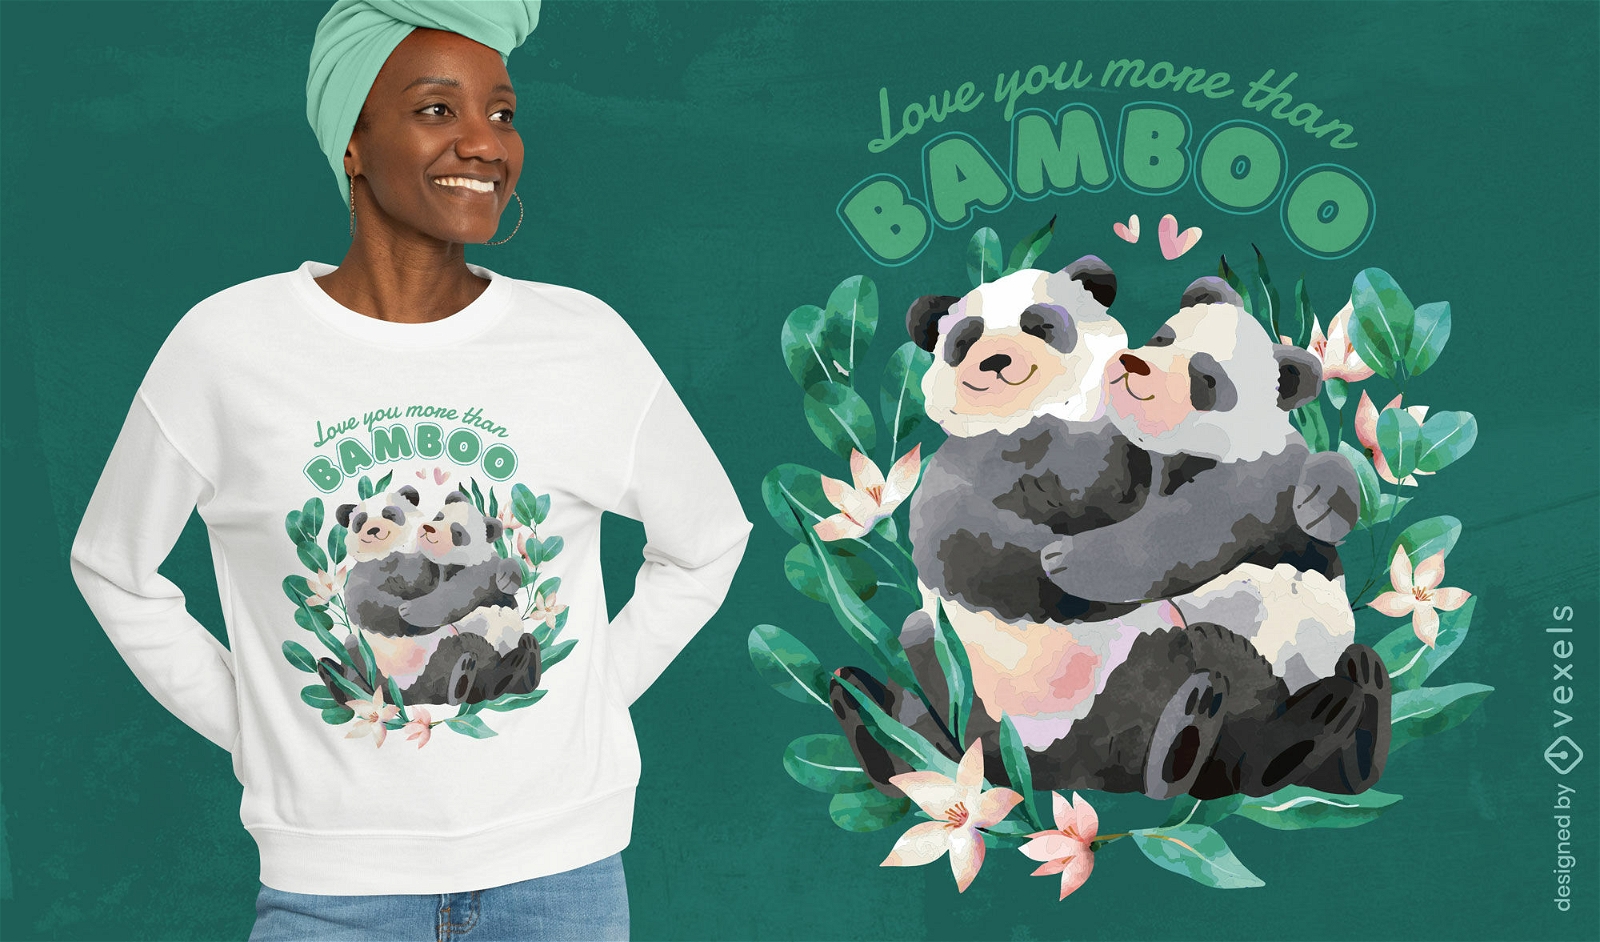 Pandas abrazando dise?o de camiseta de amor.